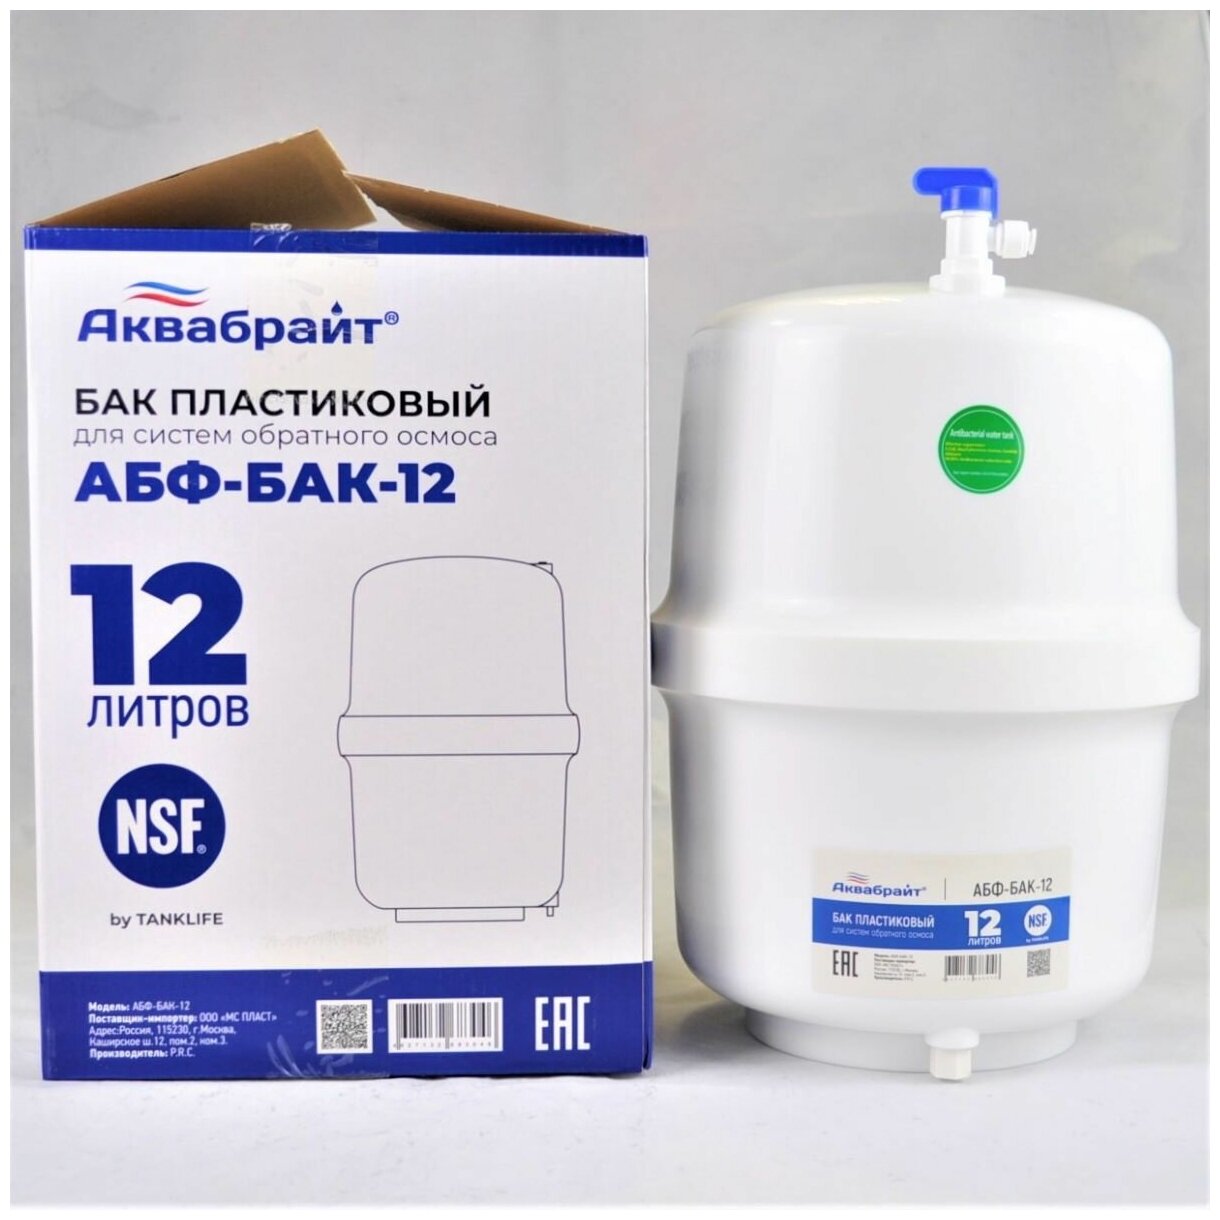 АБФ БАК накопительный пластиковой Аквабрайт для систем обратного осмоса 6-7 литров.